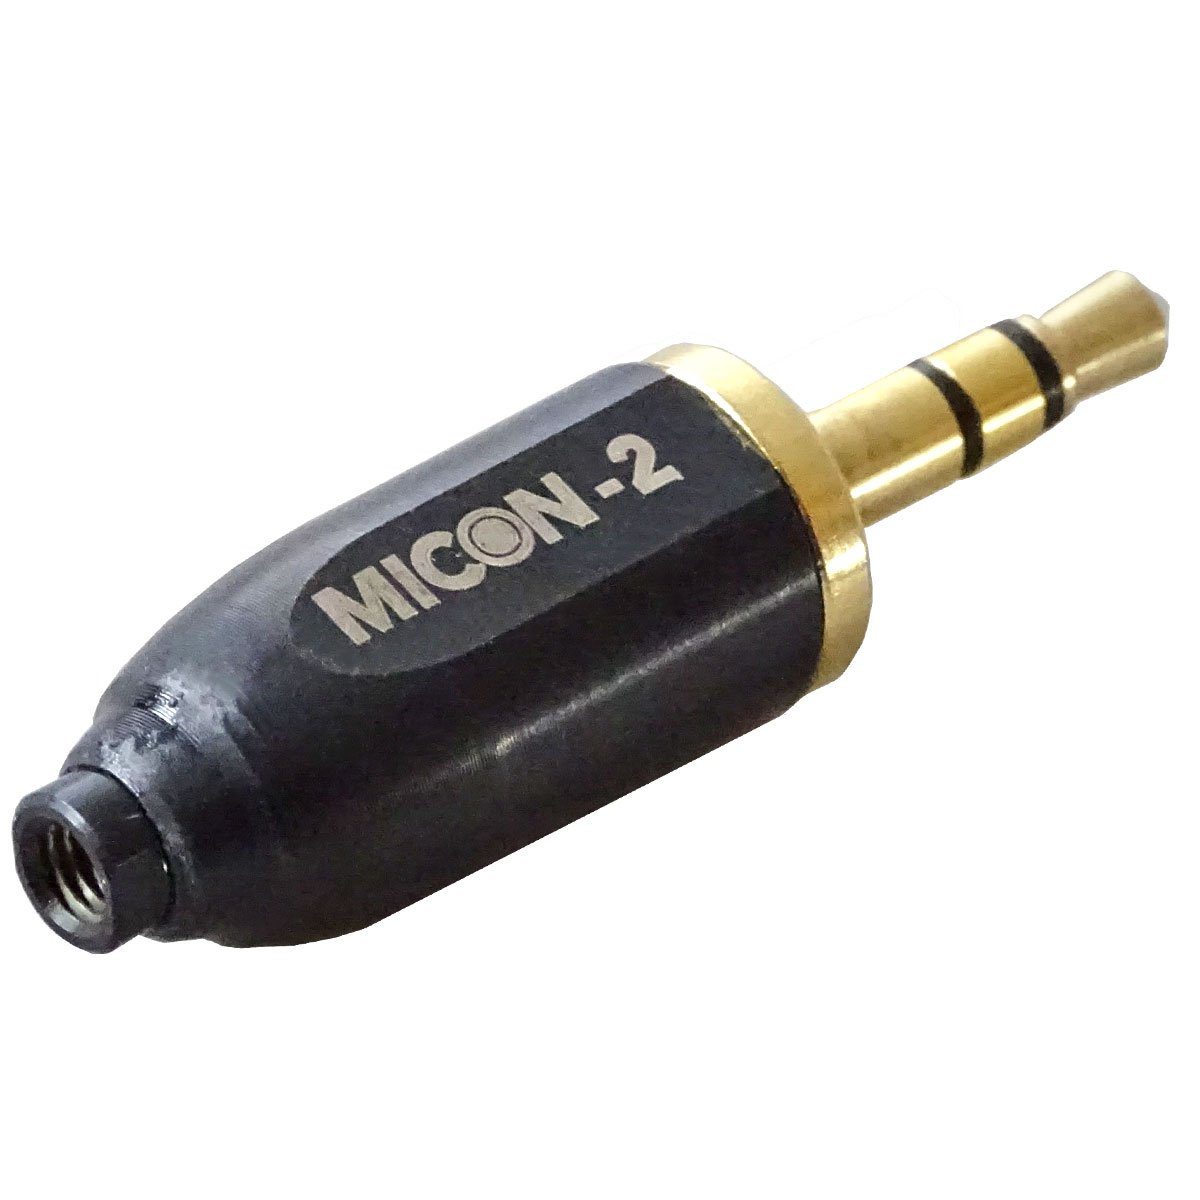 RØDE Micon 2 Adapter MiCon zu 3,5mm Klinke Audio-Adapter Micon zu 3,5-mm-Klinke